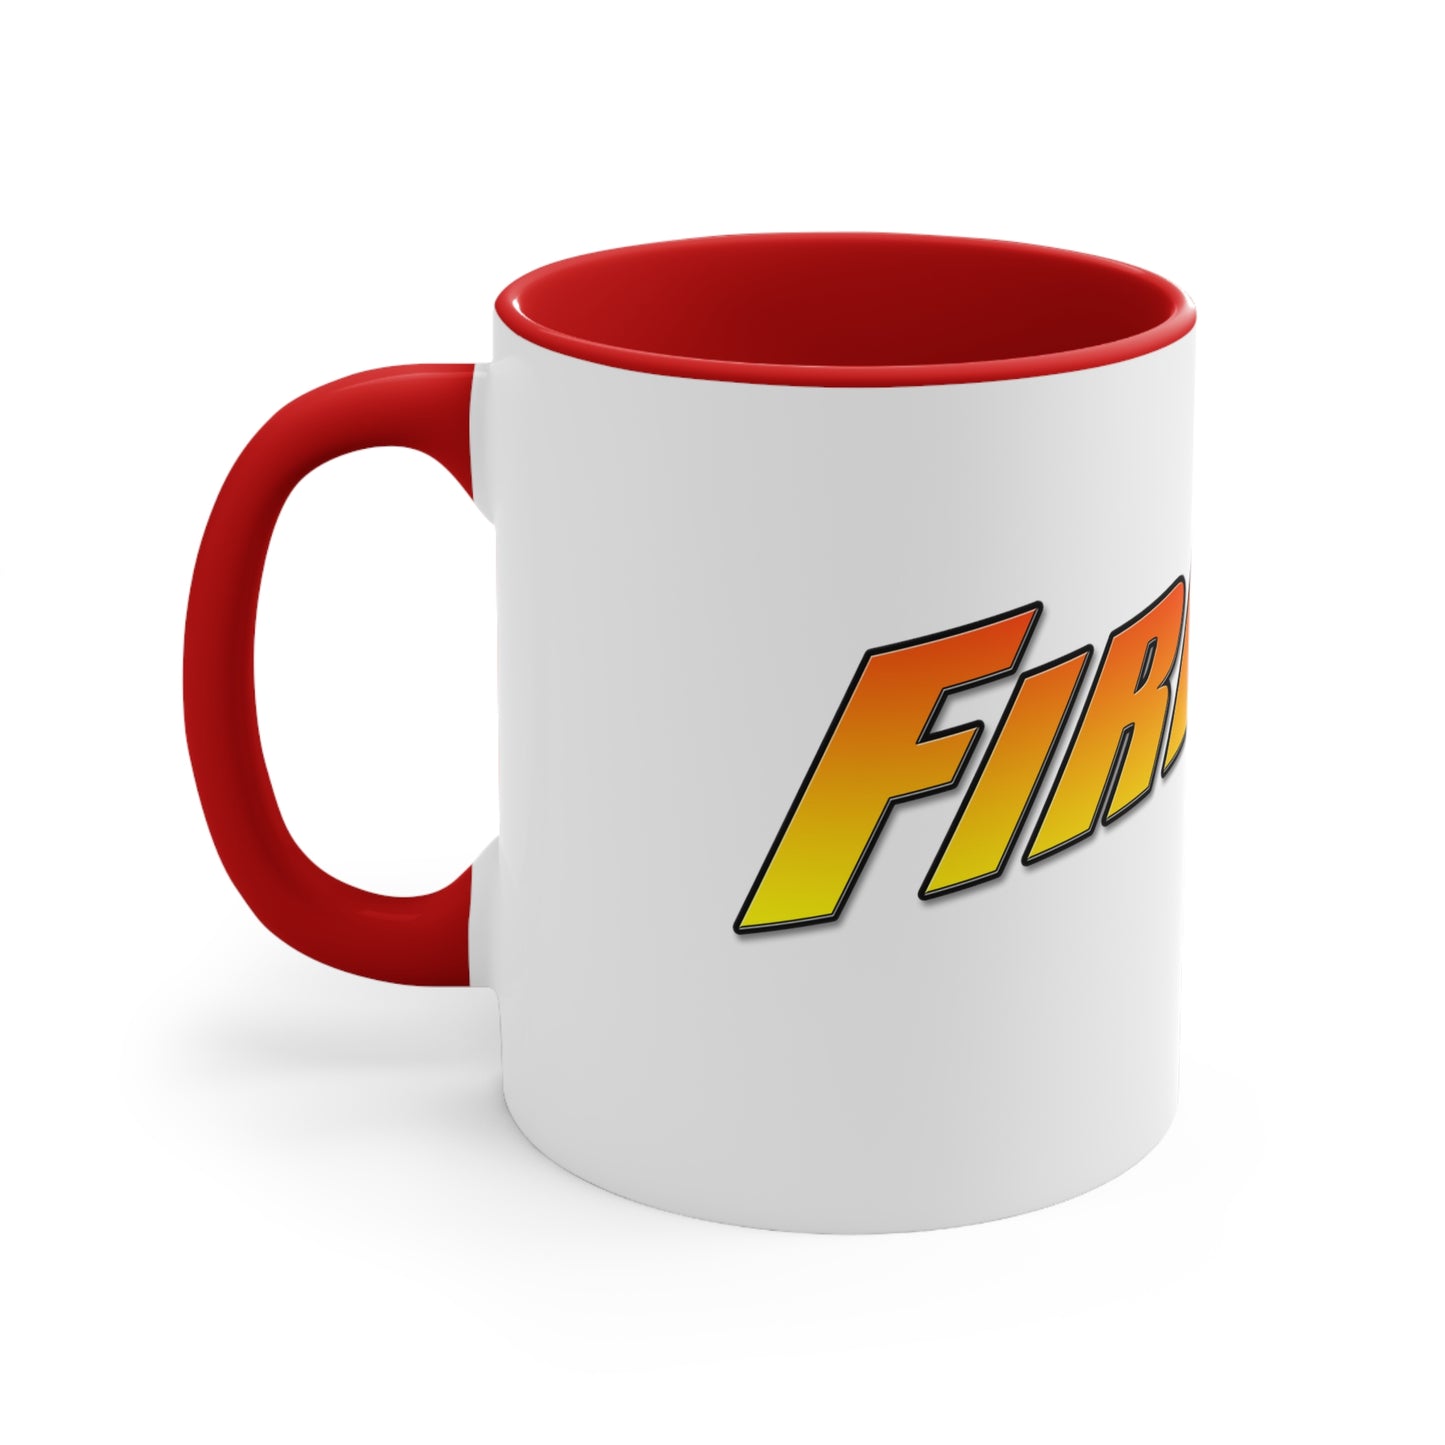 FIREBALL TIM Official Coffee Mug, 11oz